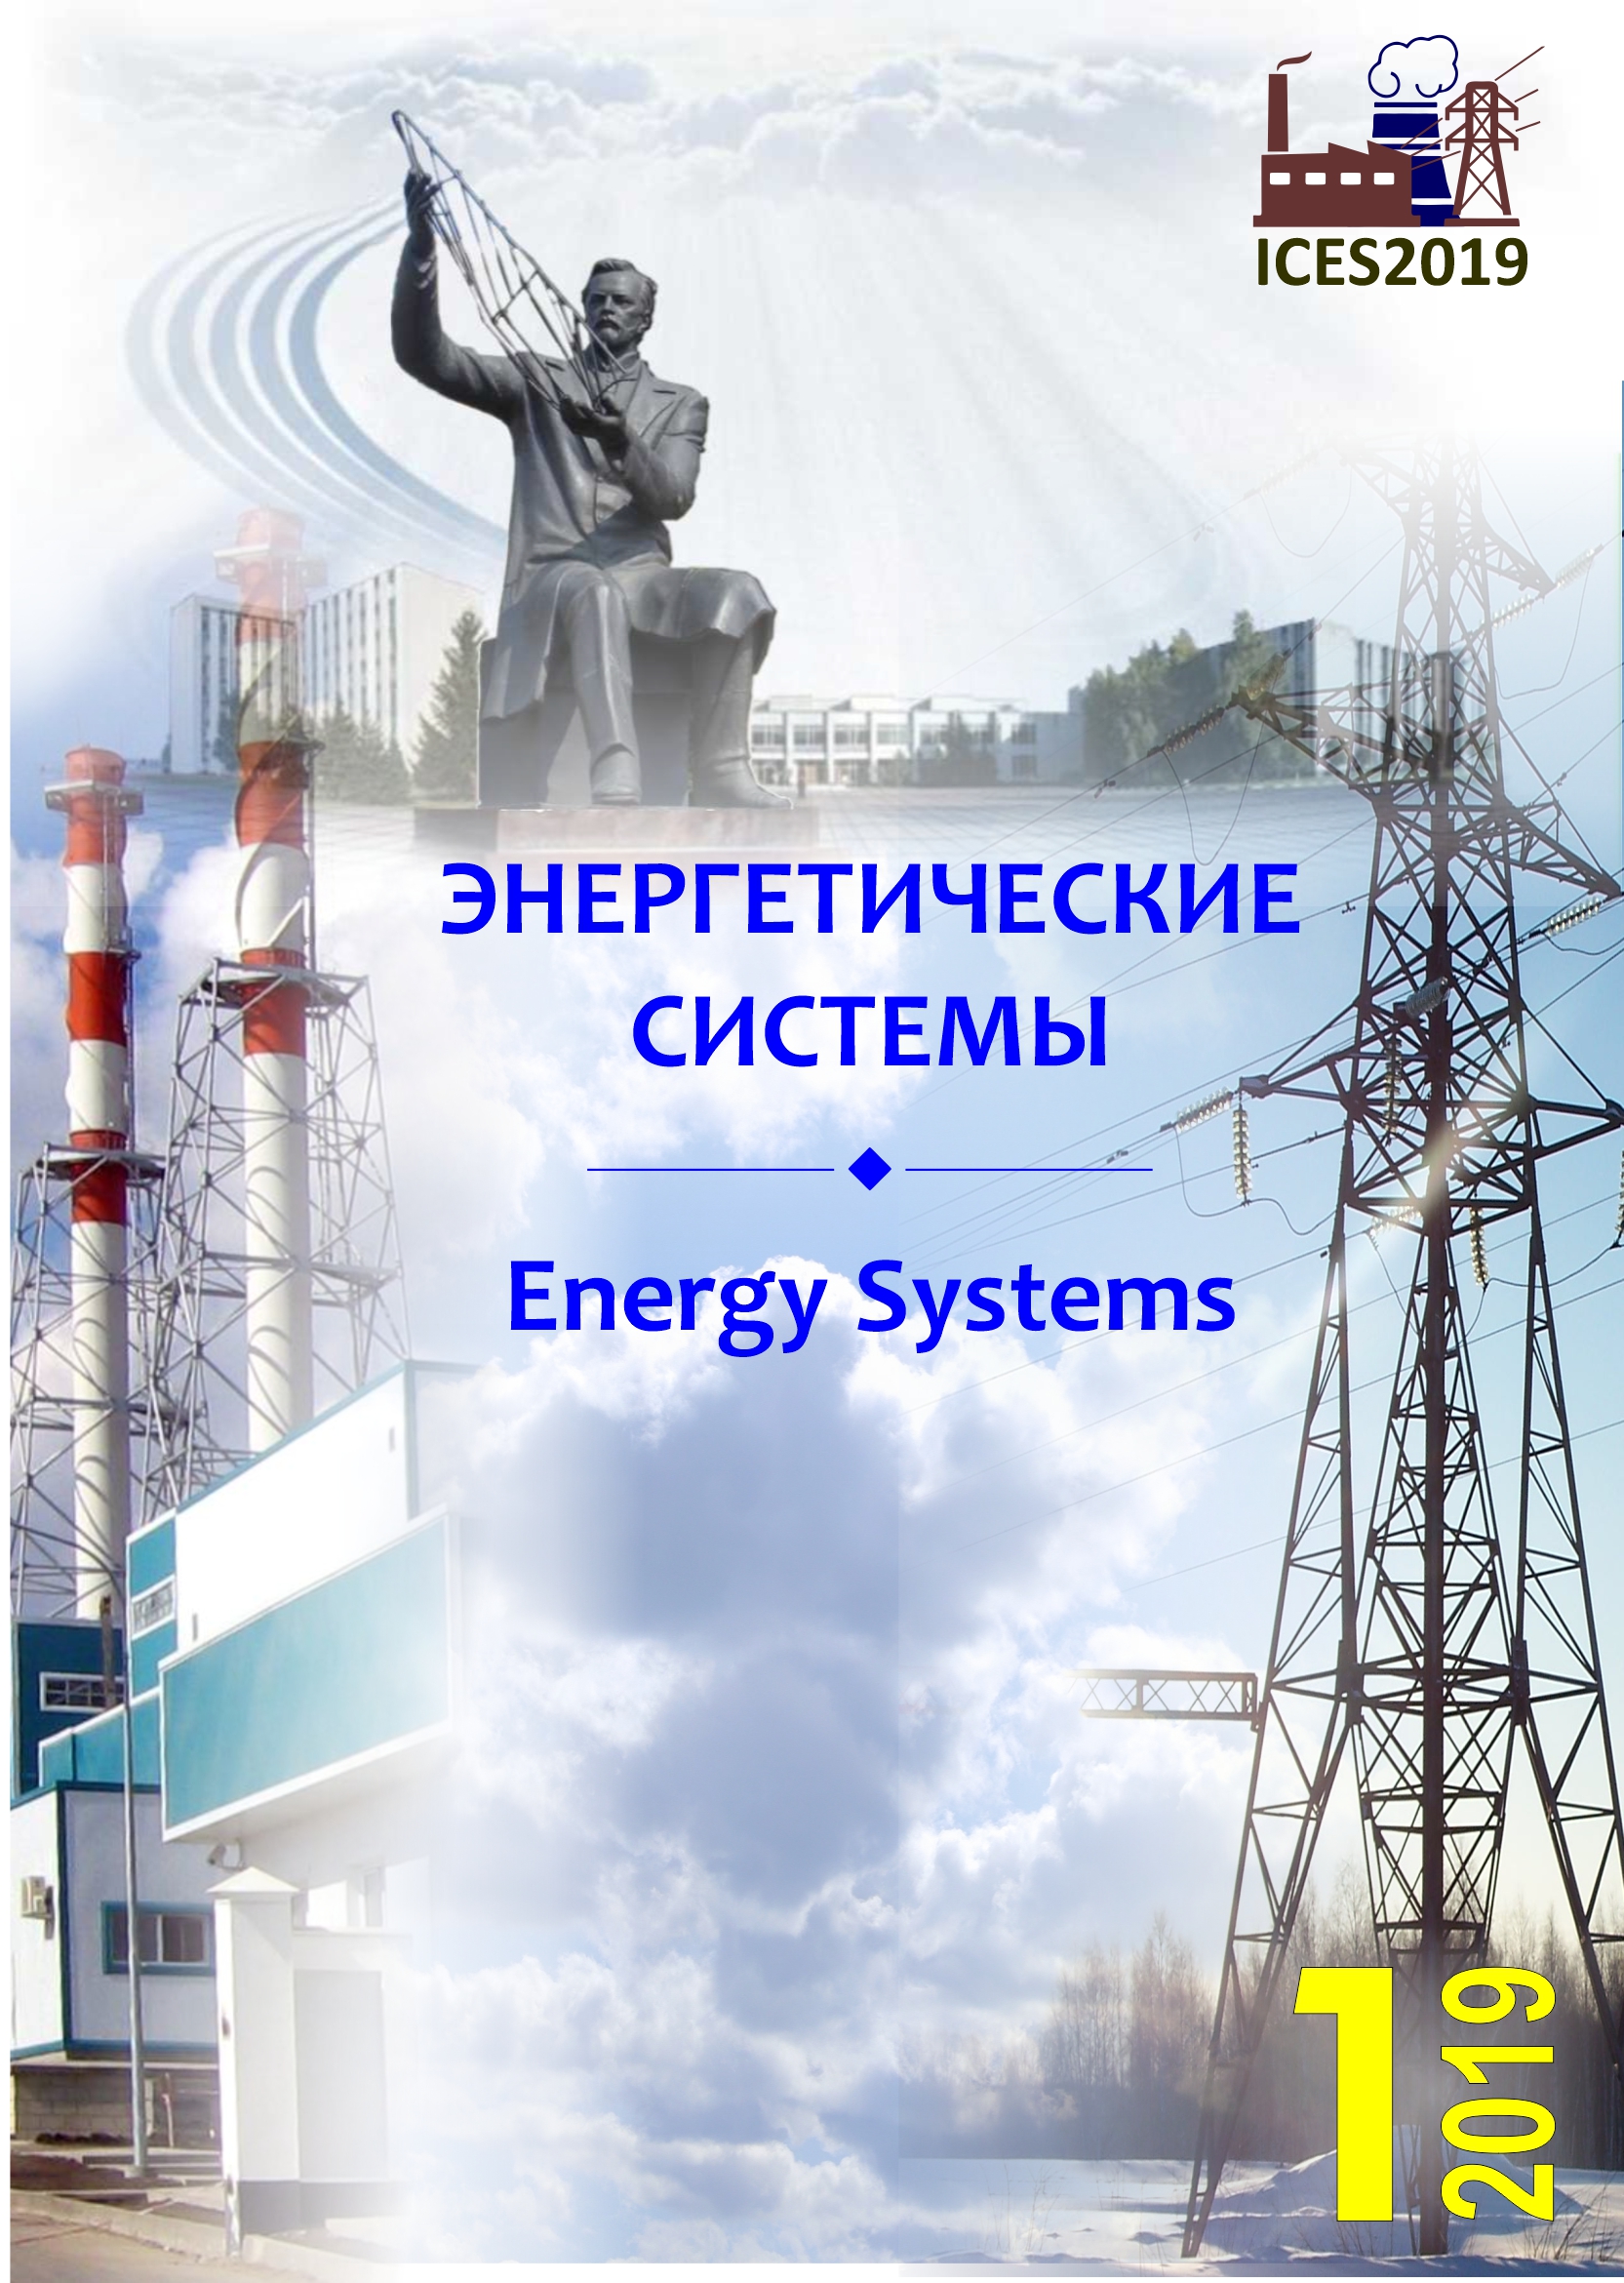 					Показать Том 4 № 1 (2019): IV международная научно-техническая конференция «Энергетические системы» (ICES-2019)
				